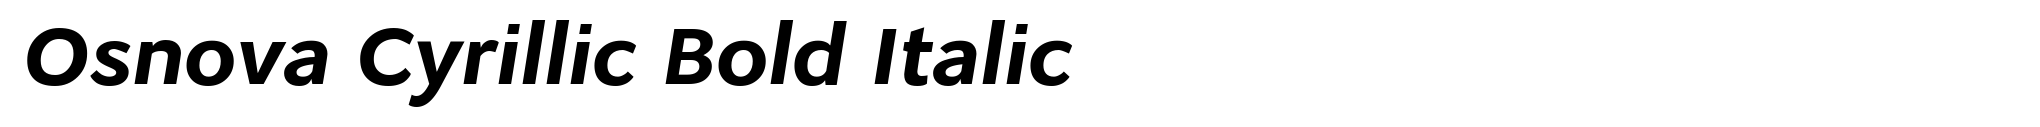 Osnova Cyrillic Bold Italic image